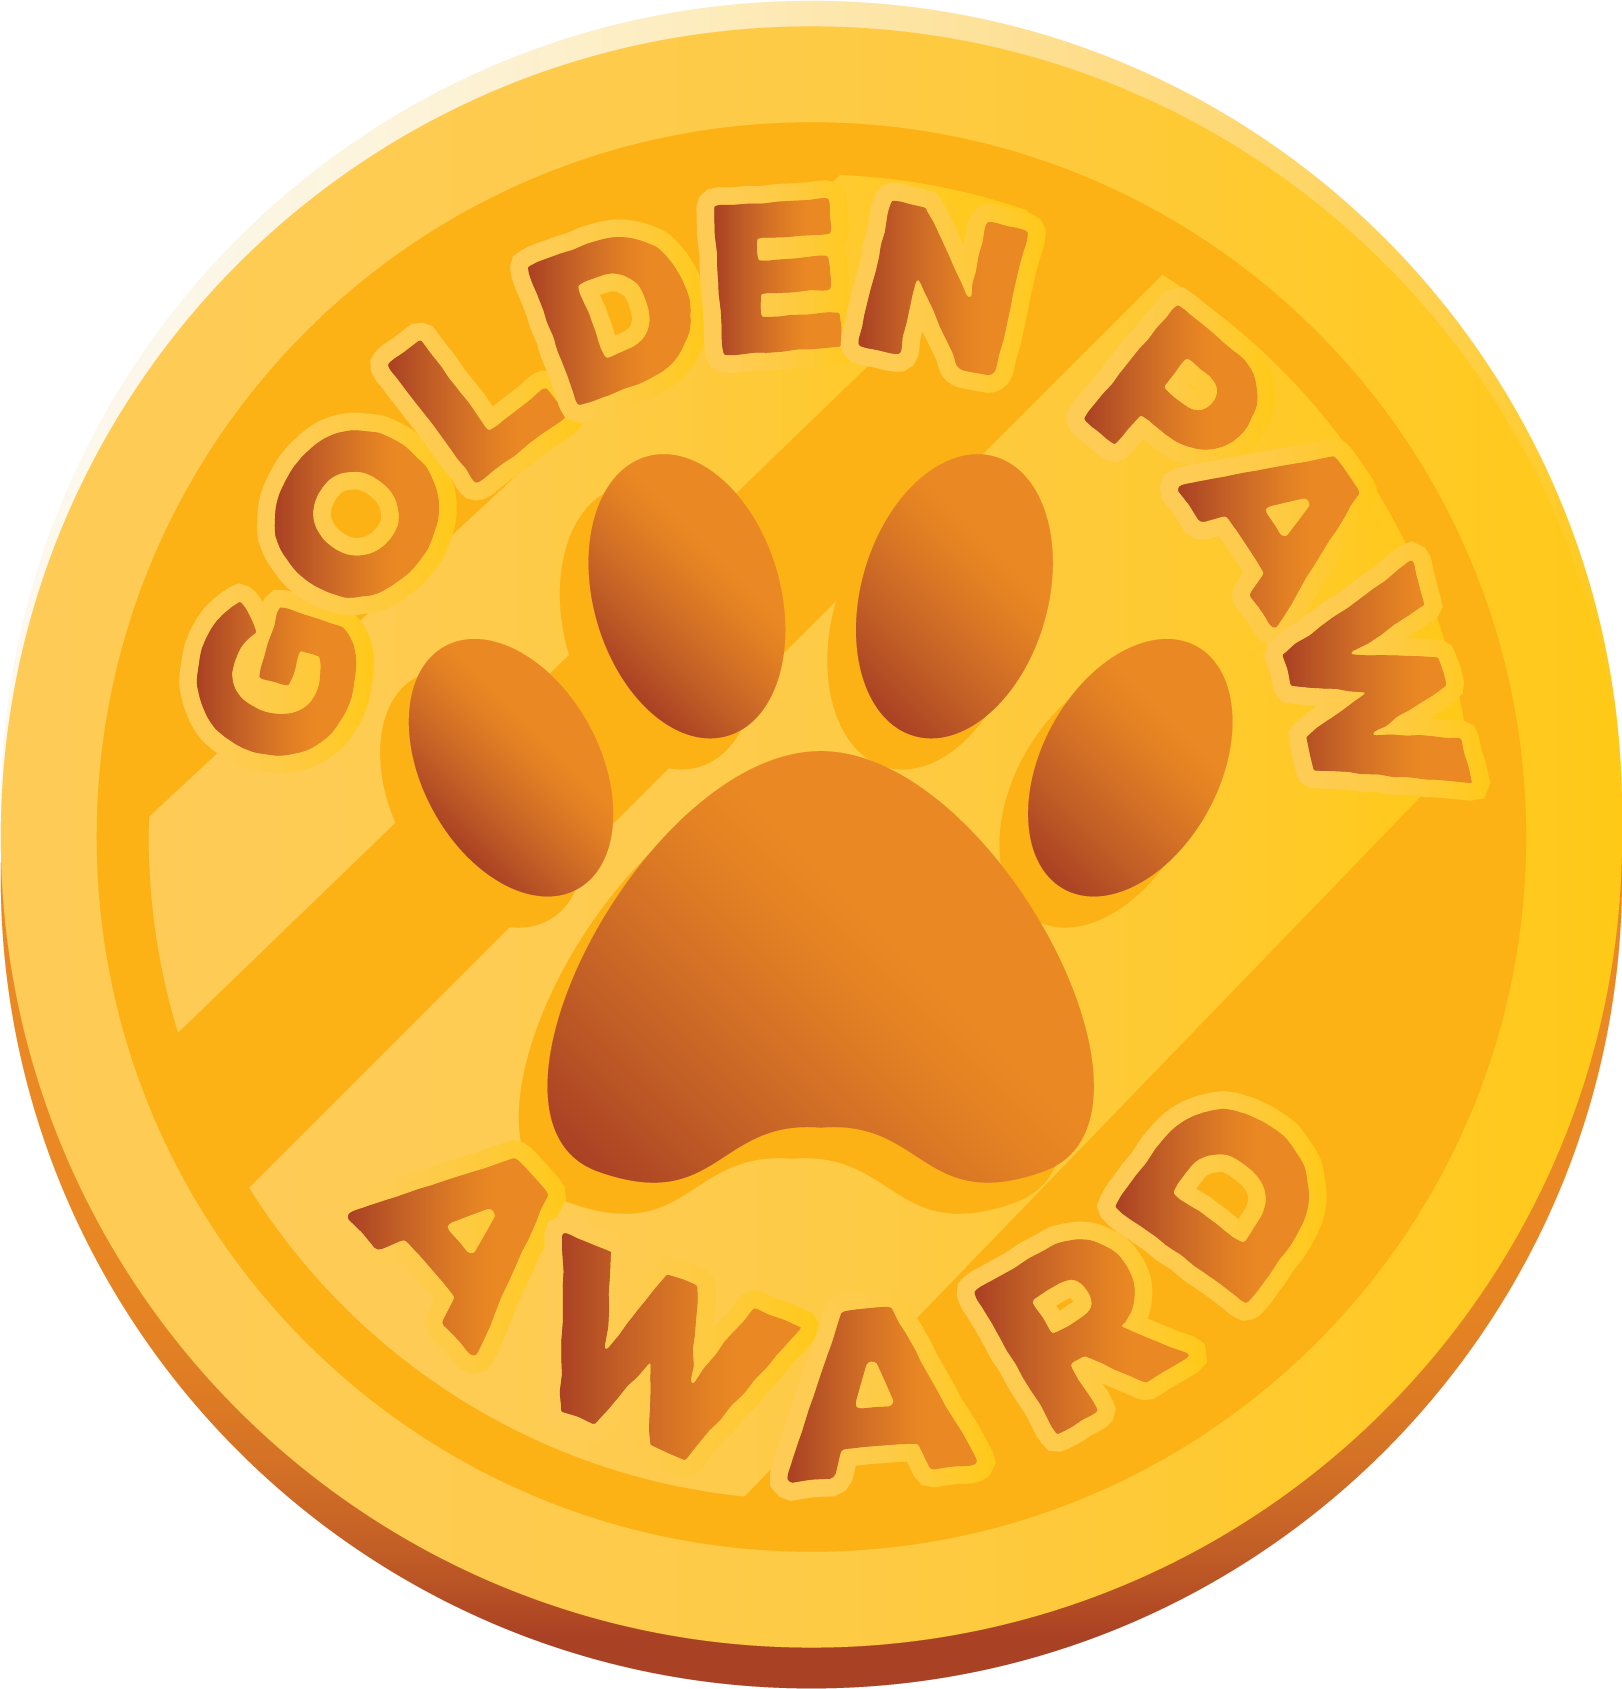 Delta Dog with award